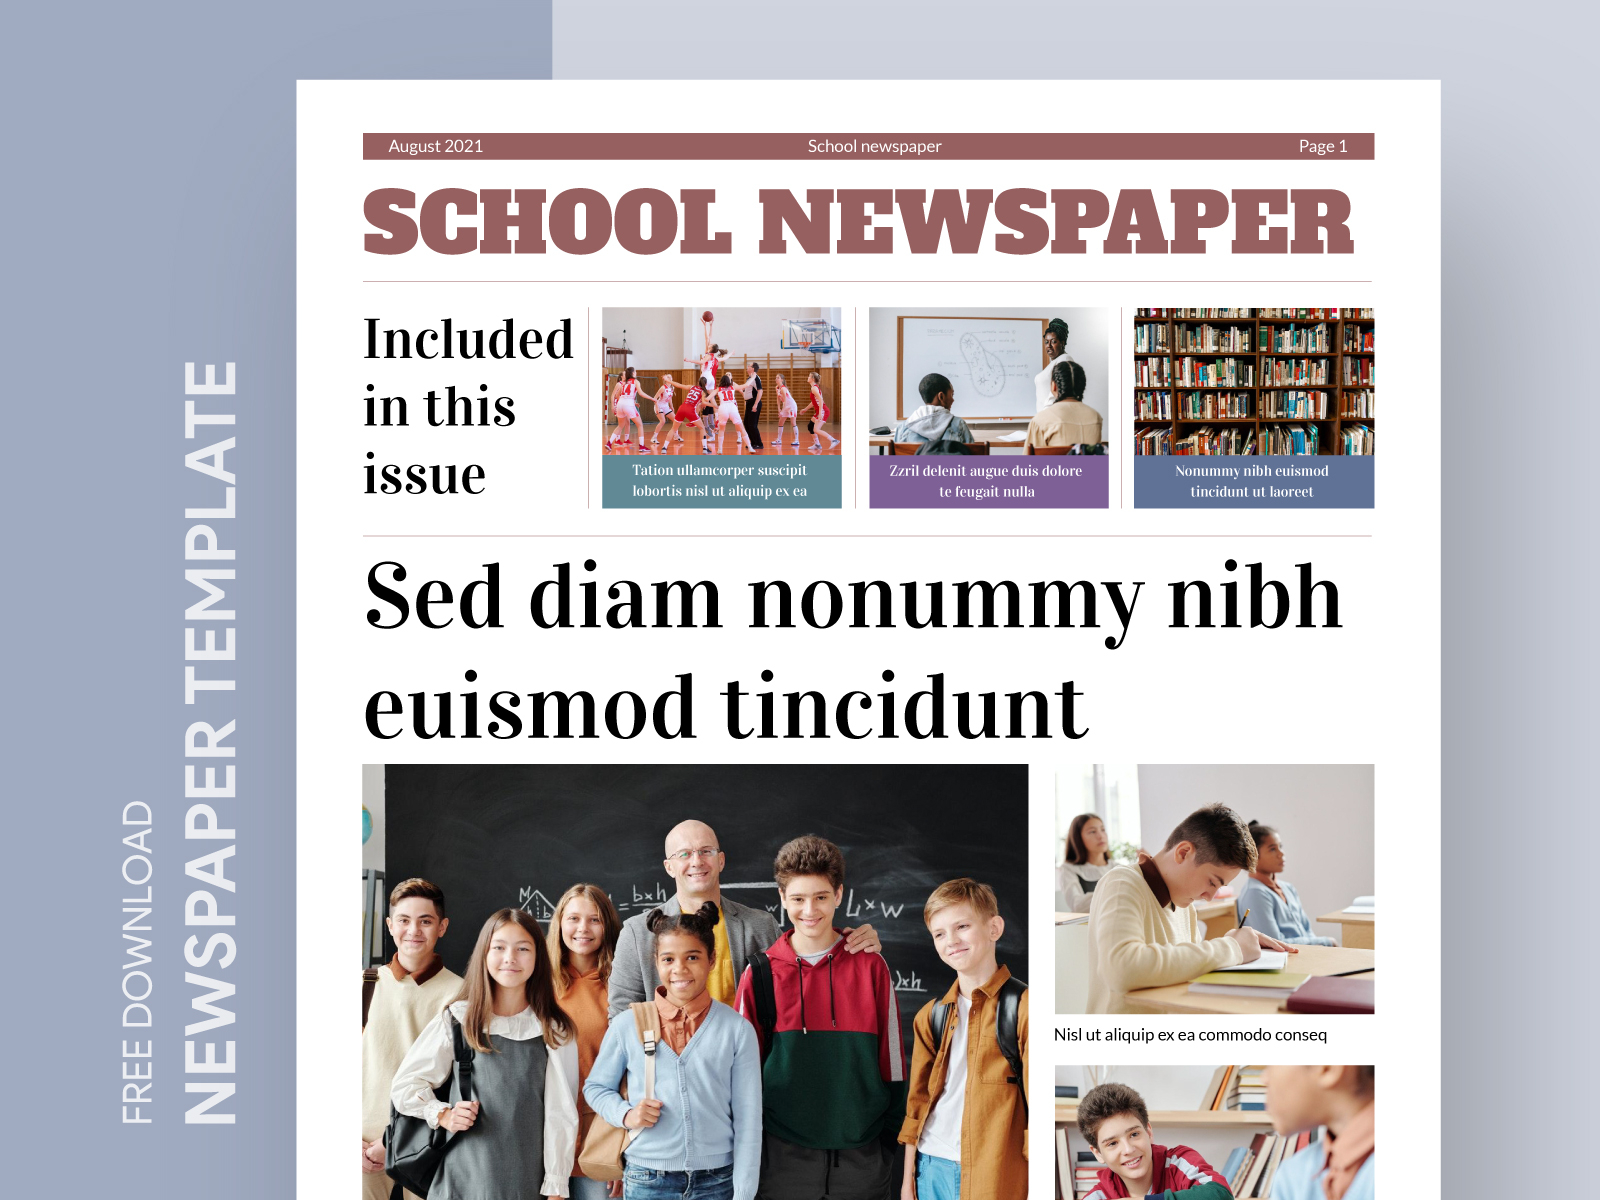 School papers. School newspaper. School News.